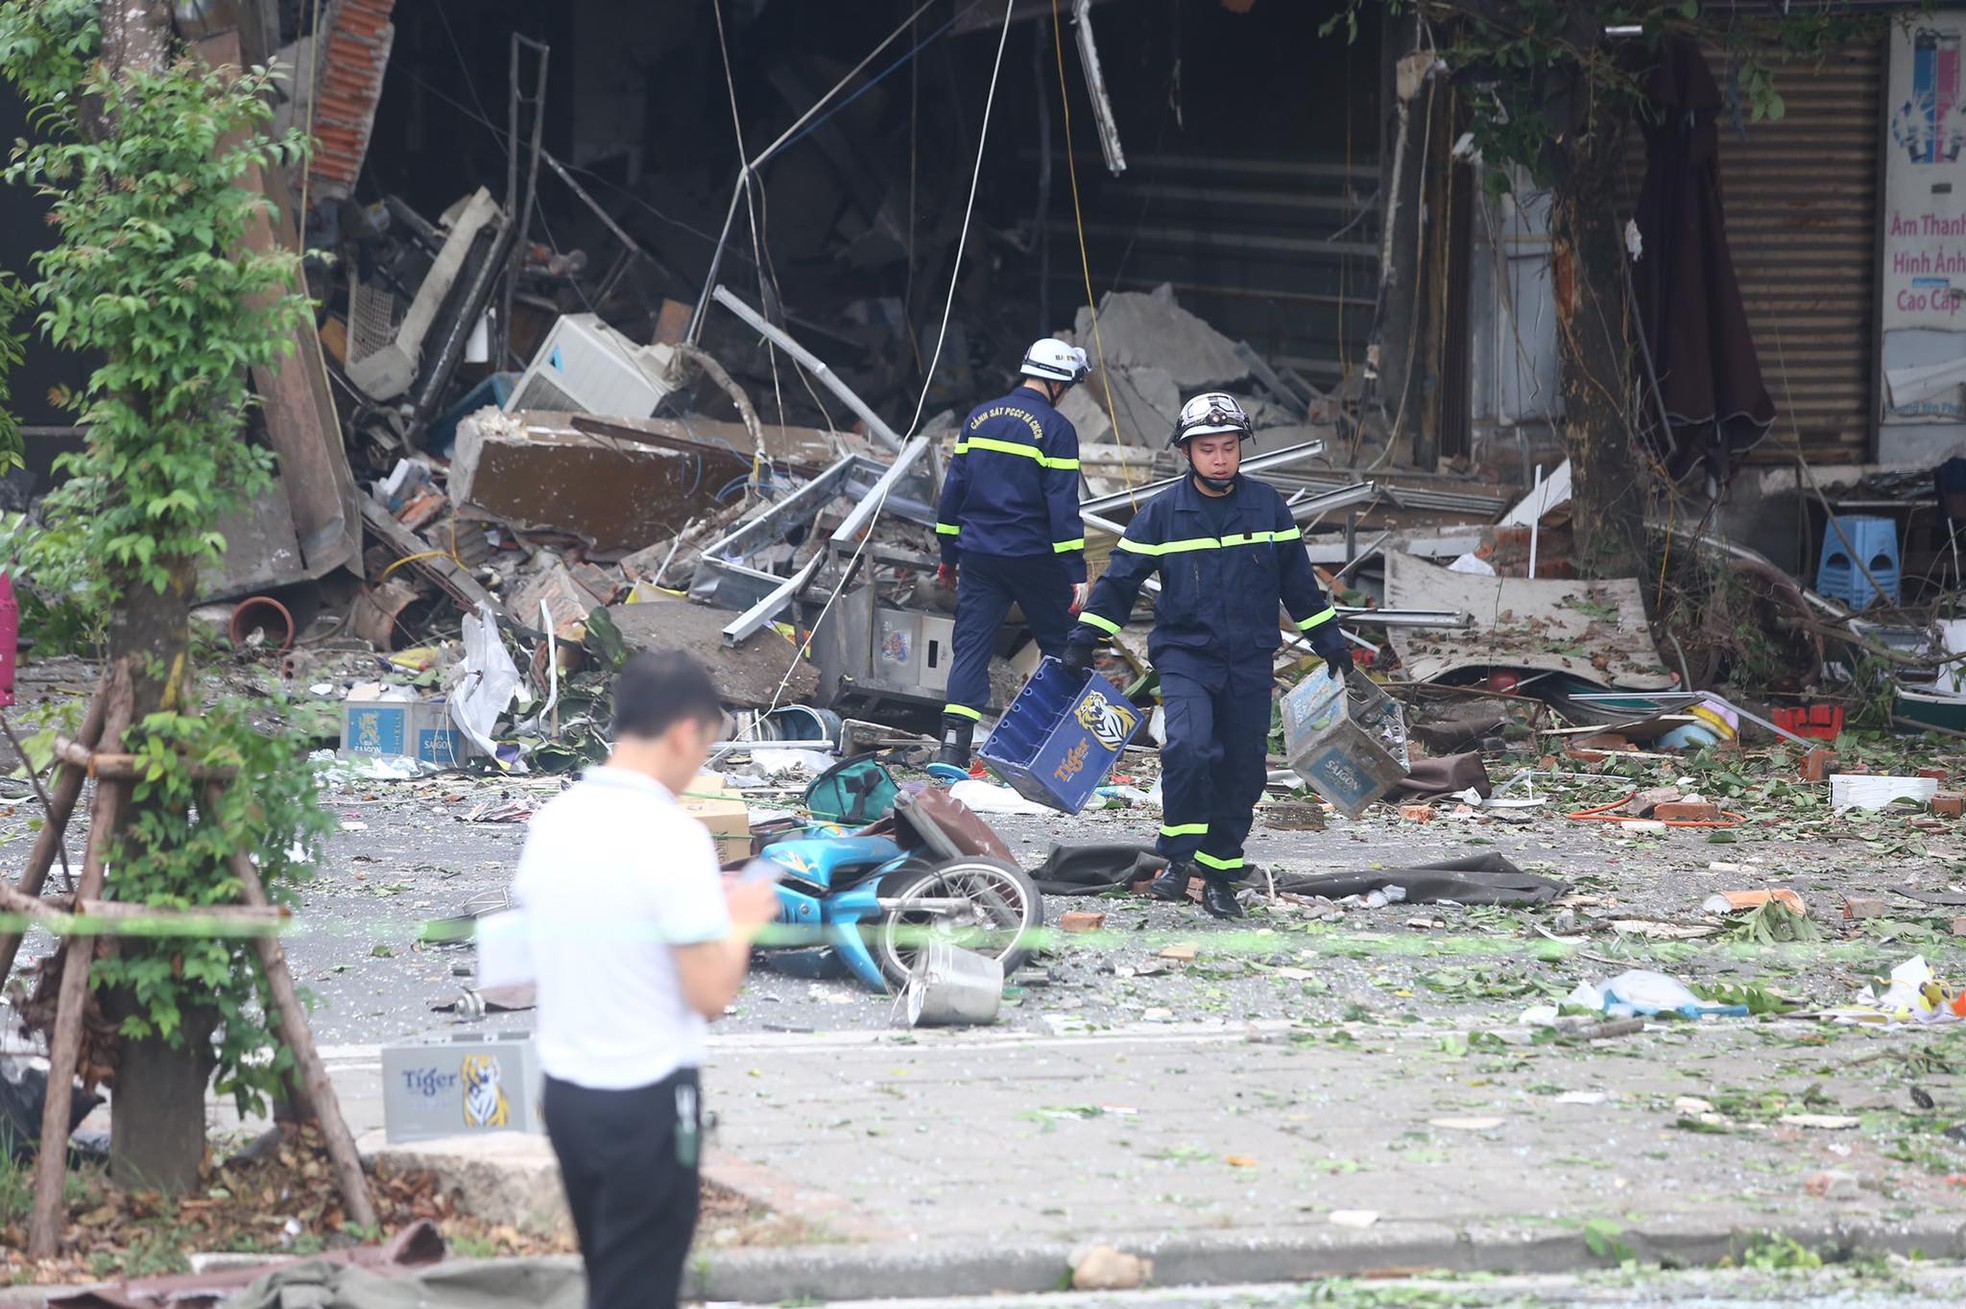 Hiện trường vụ nổ kinh hoàng khiến nhiều người bị thương ở Hà Nội - Ảnh 3.